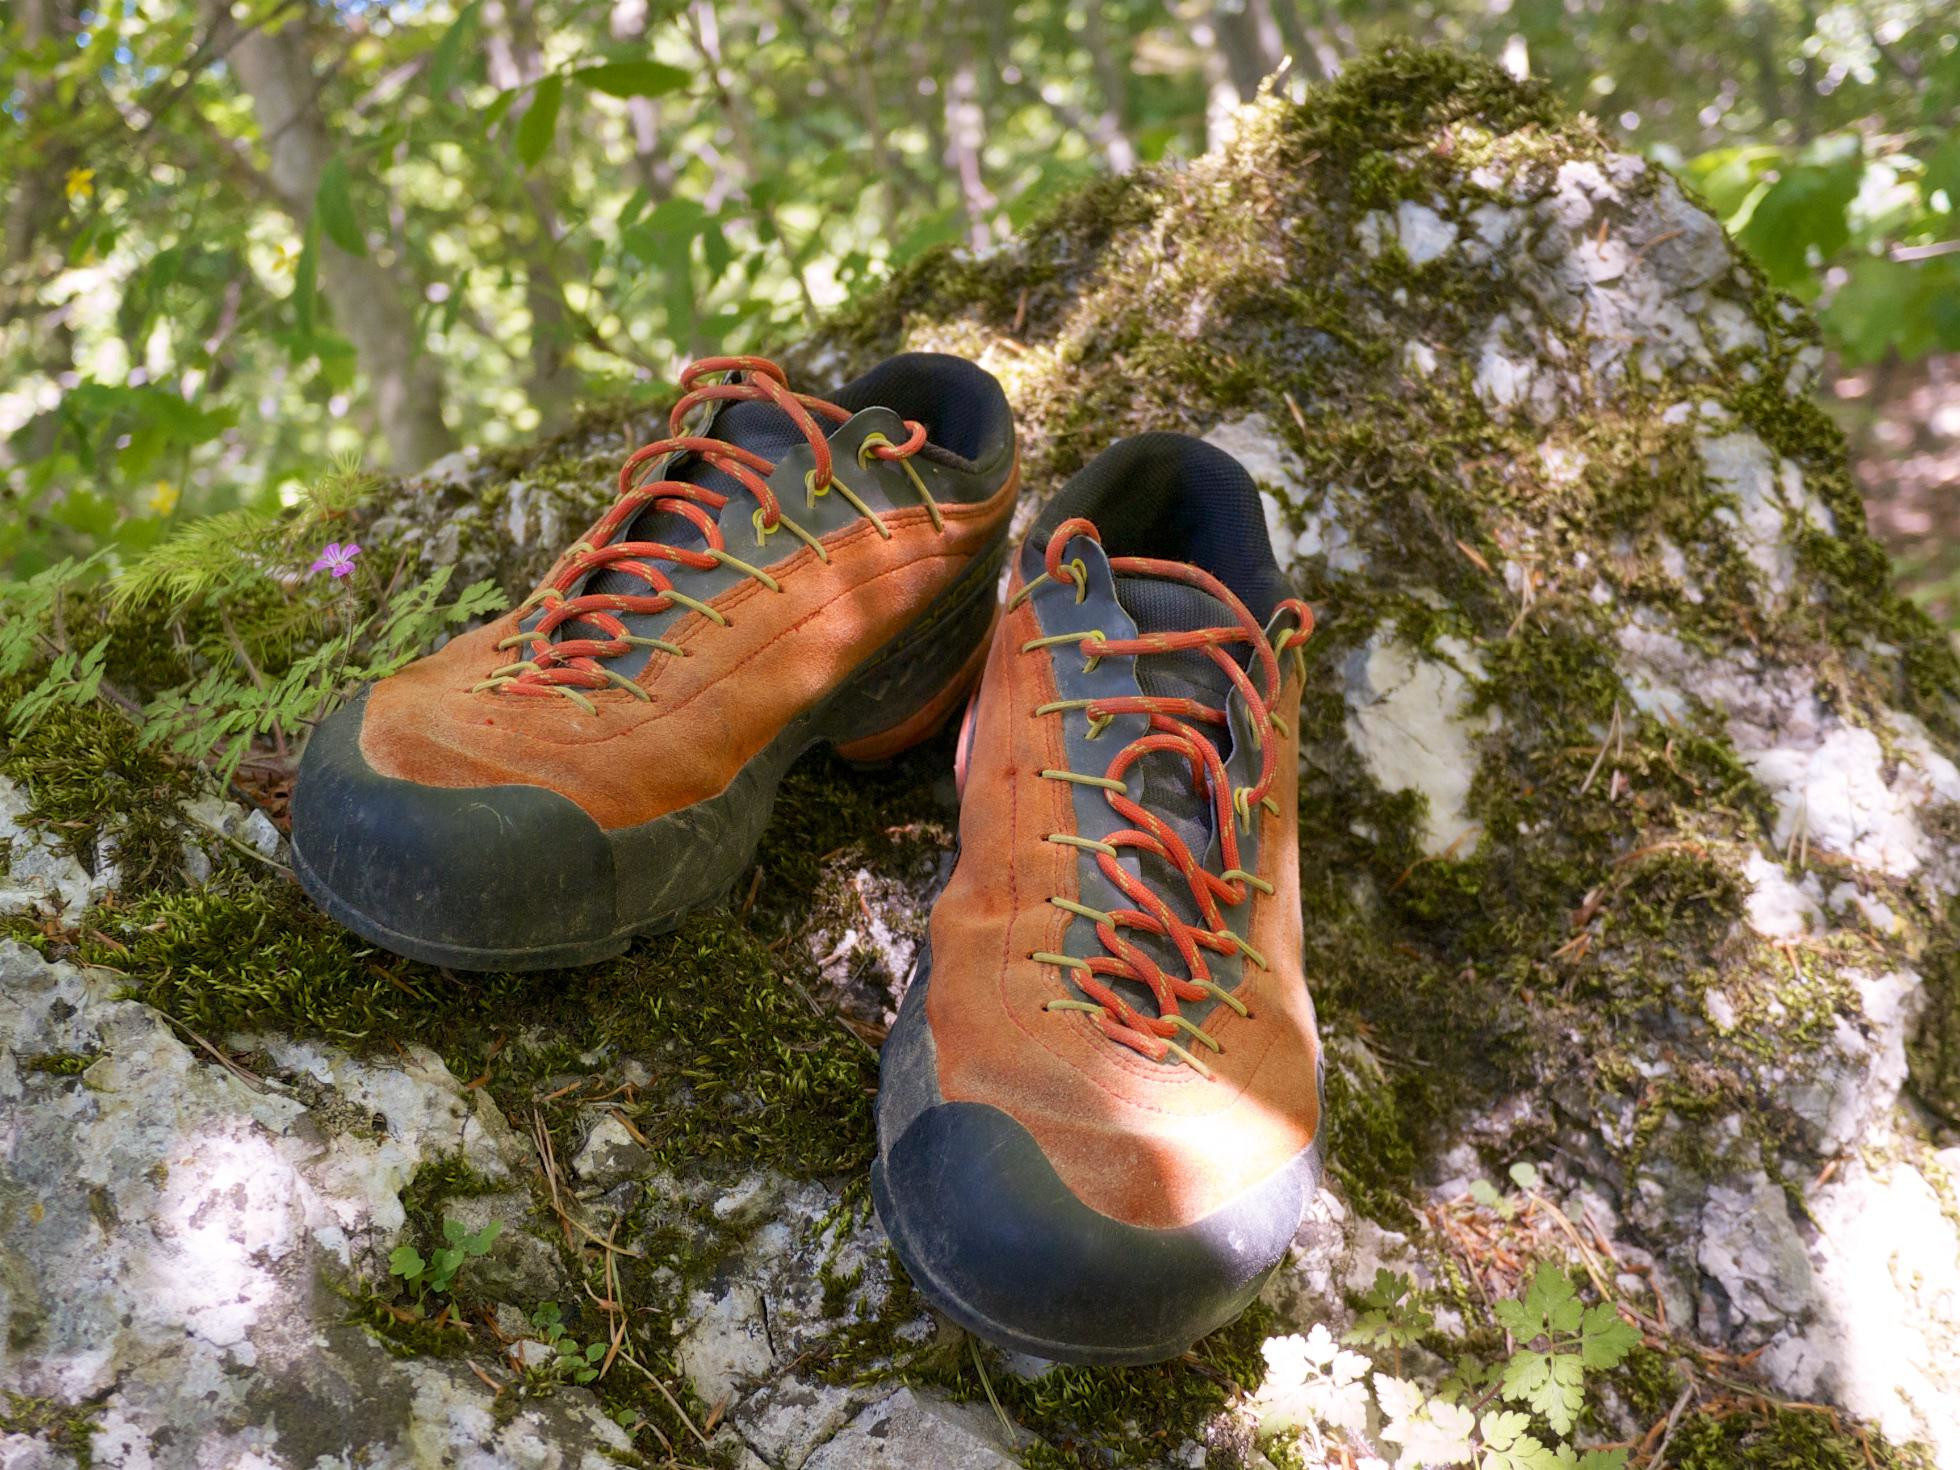 LaSportiva TX4 sú topánky, ktoré sa dobre cítia na vápenci, žule aj v lese